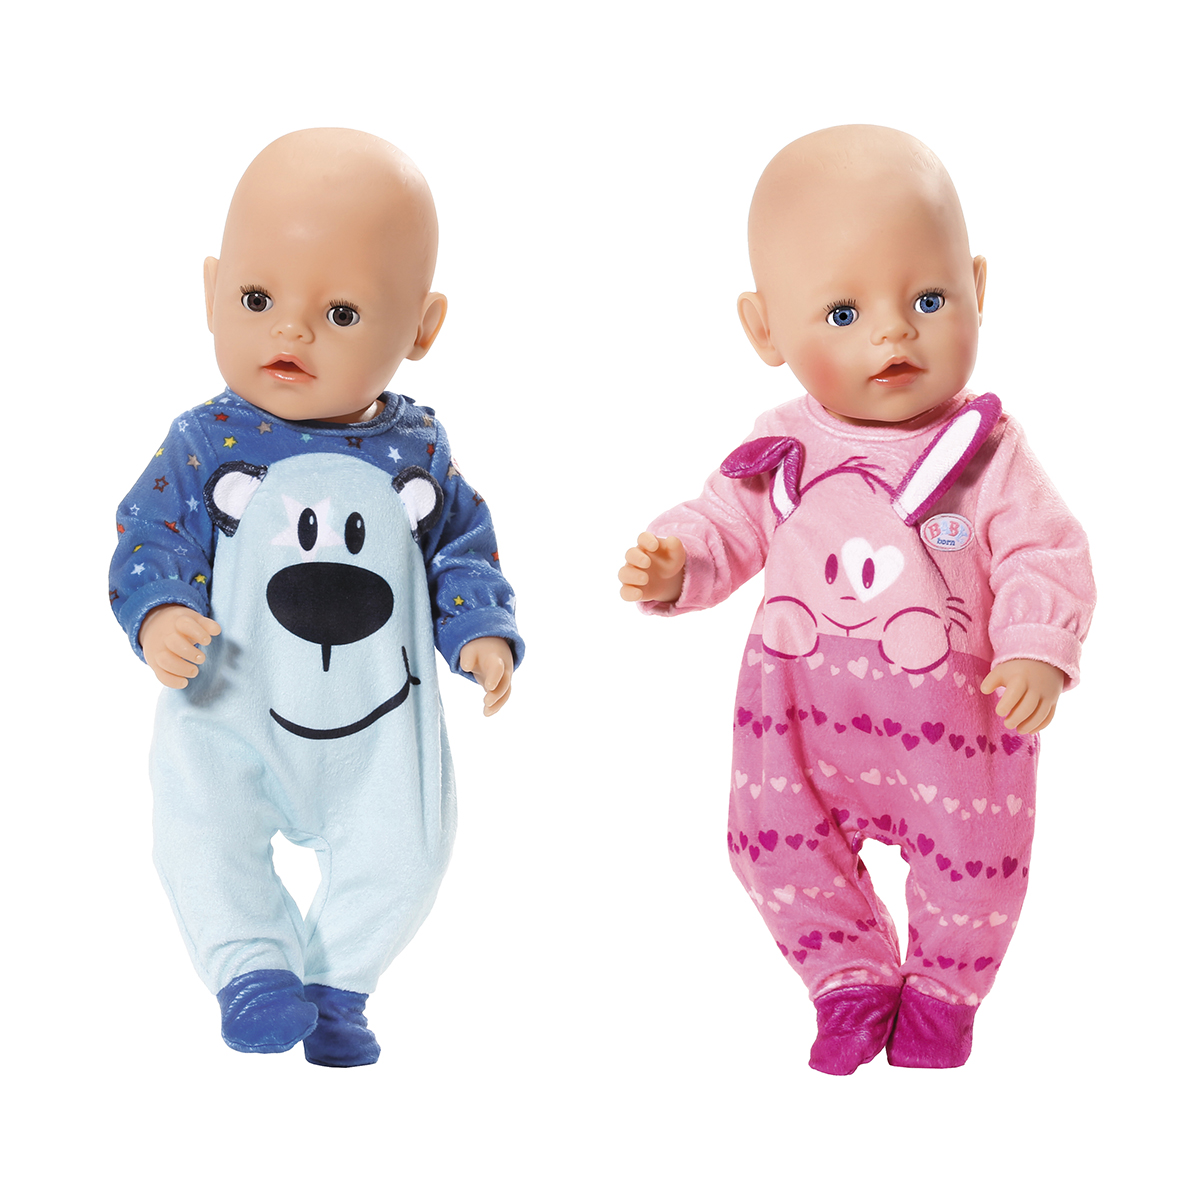 Одежда для куклы BABY born Стильный комбинезон (2 в ассорт.) (824566)